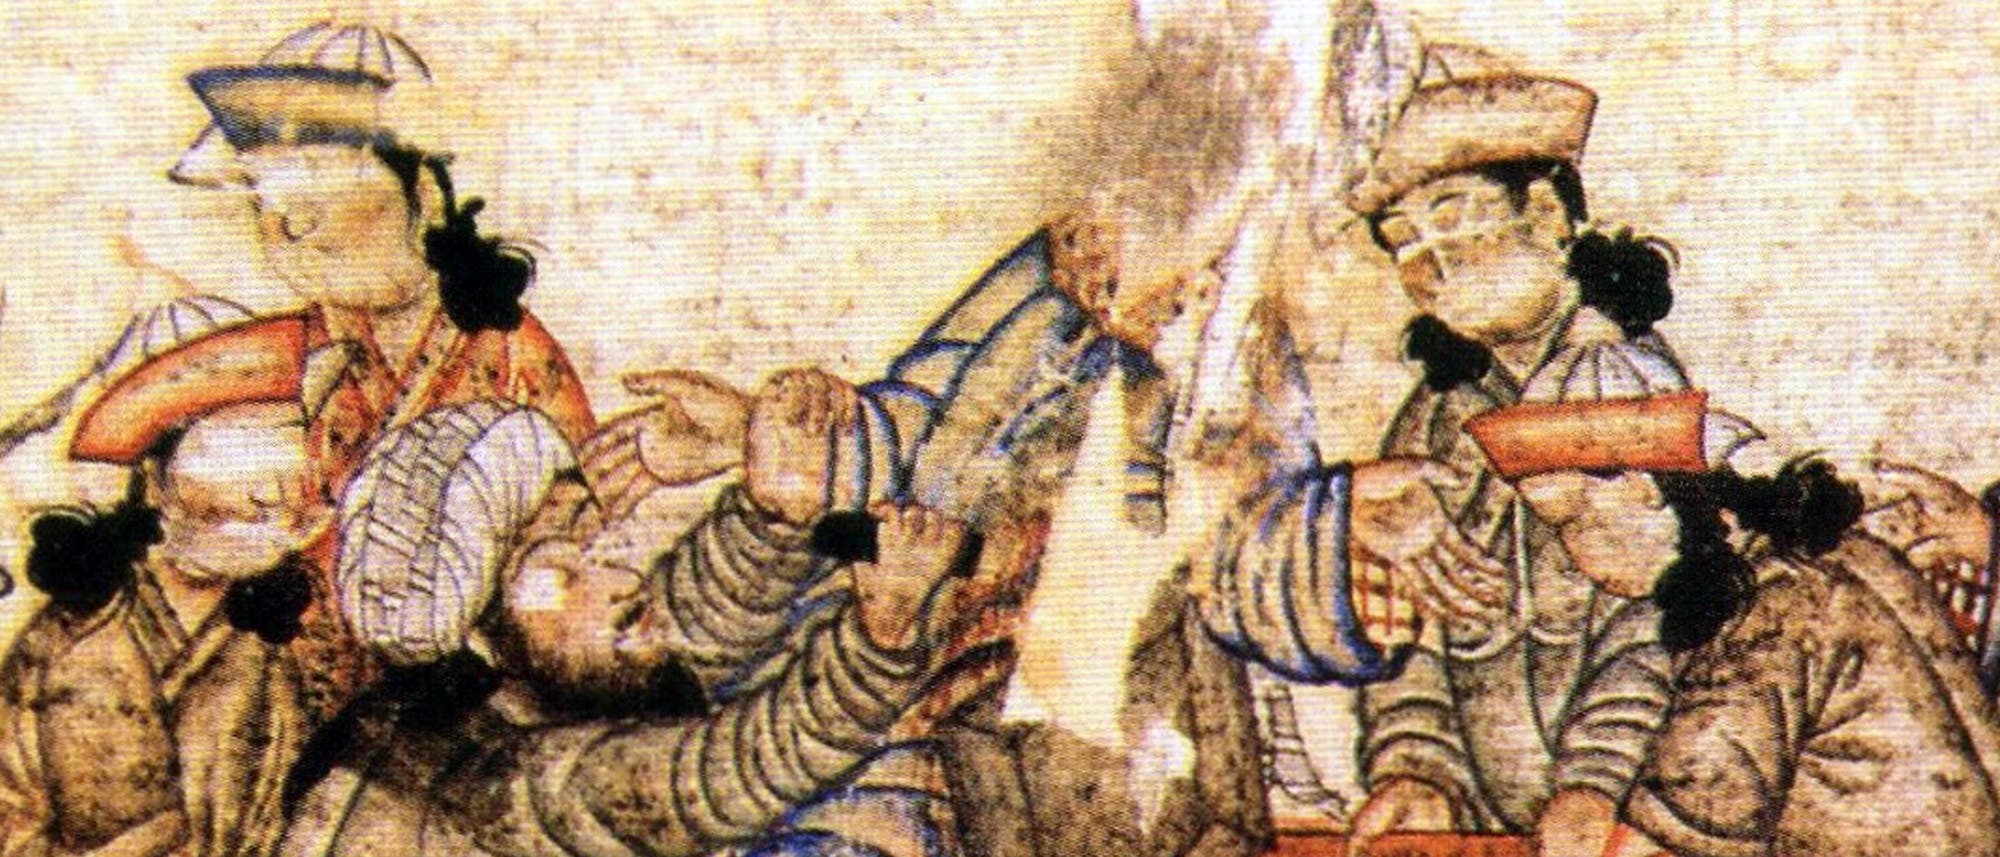 Mittelalter Wer waren die Assassinen? Bild Foto